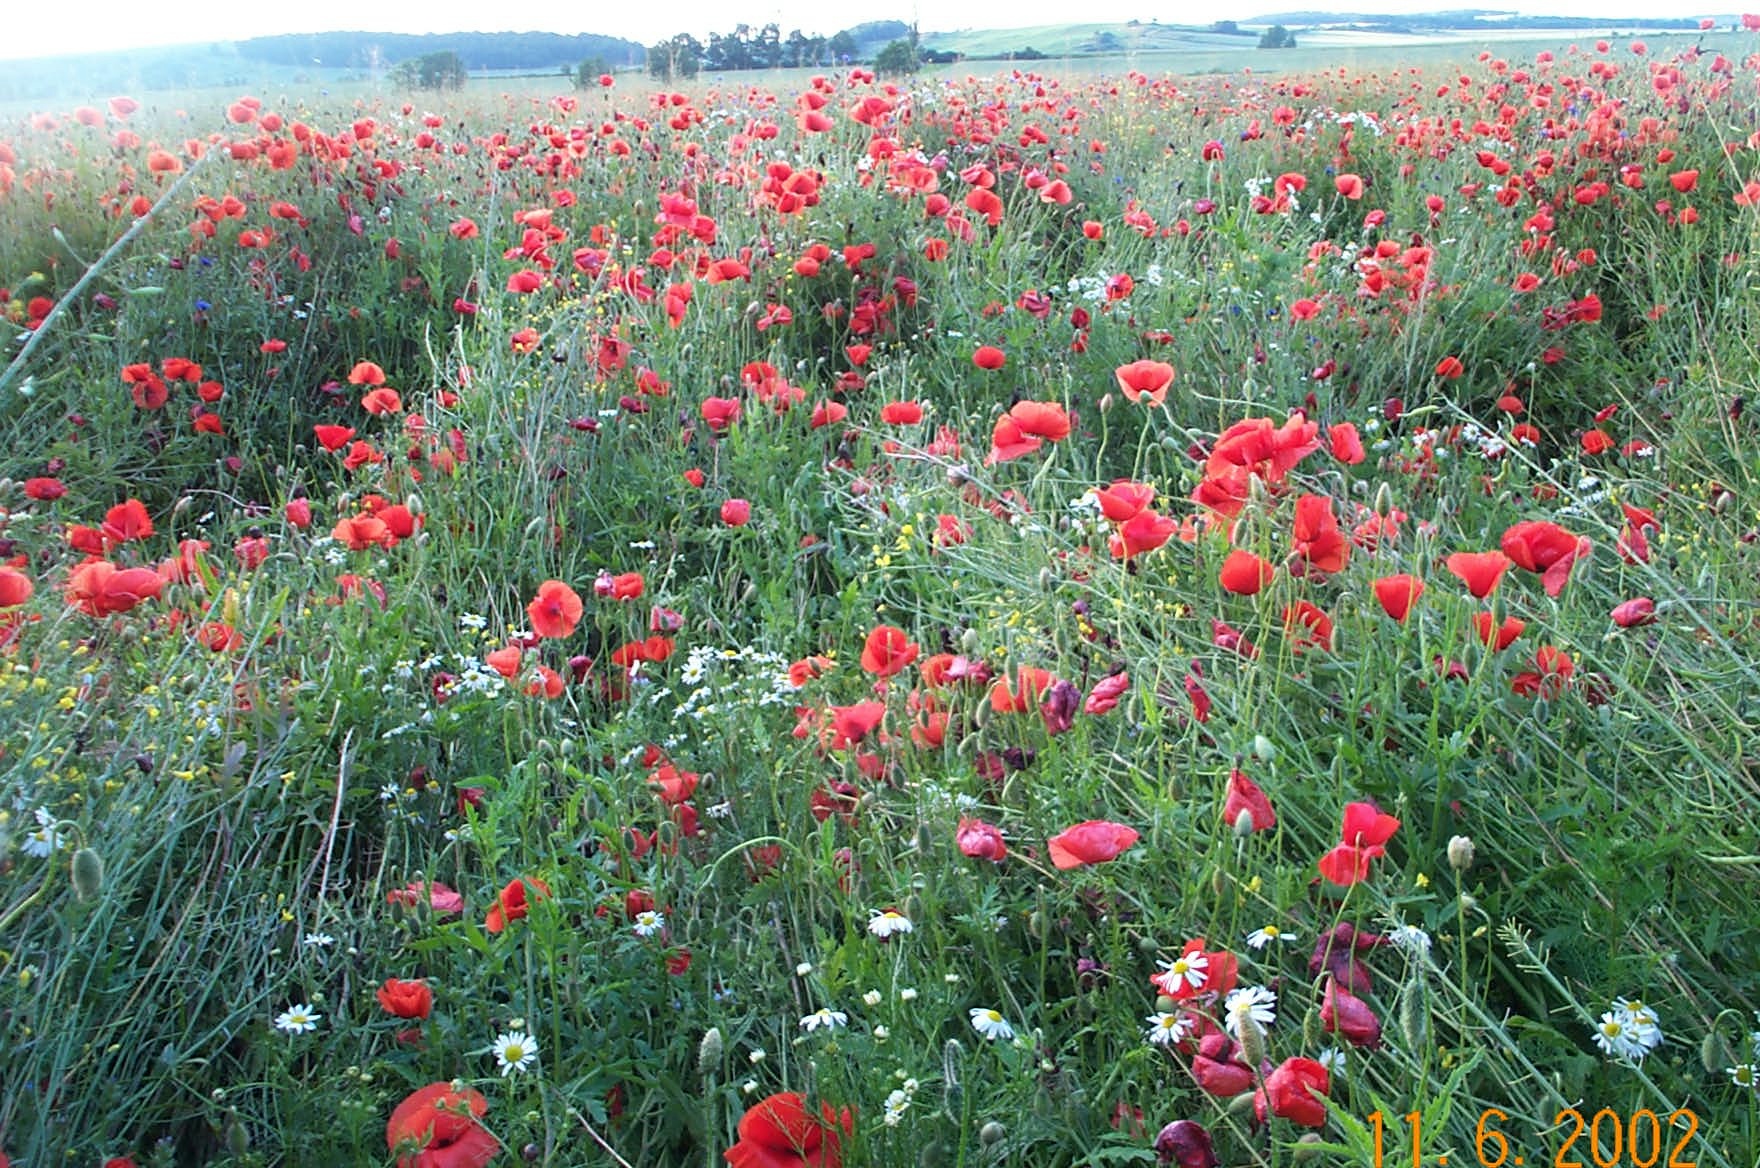 Wildrich Weltreise Im Frühsommer sehe ich viele solcher wilden Blumenwiesen in Polen